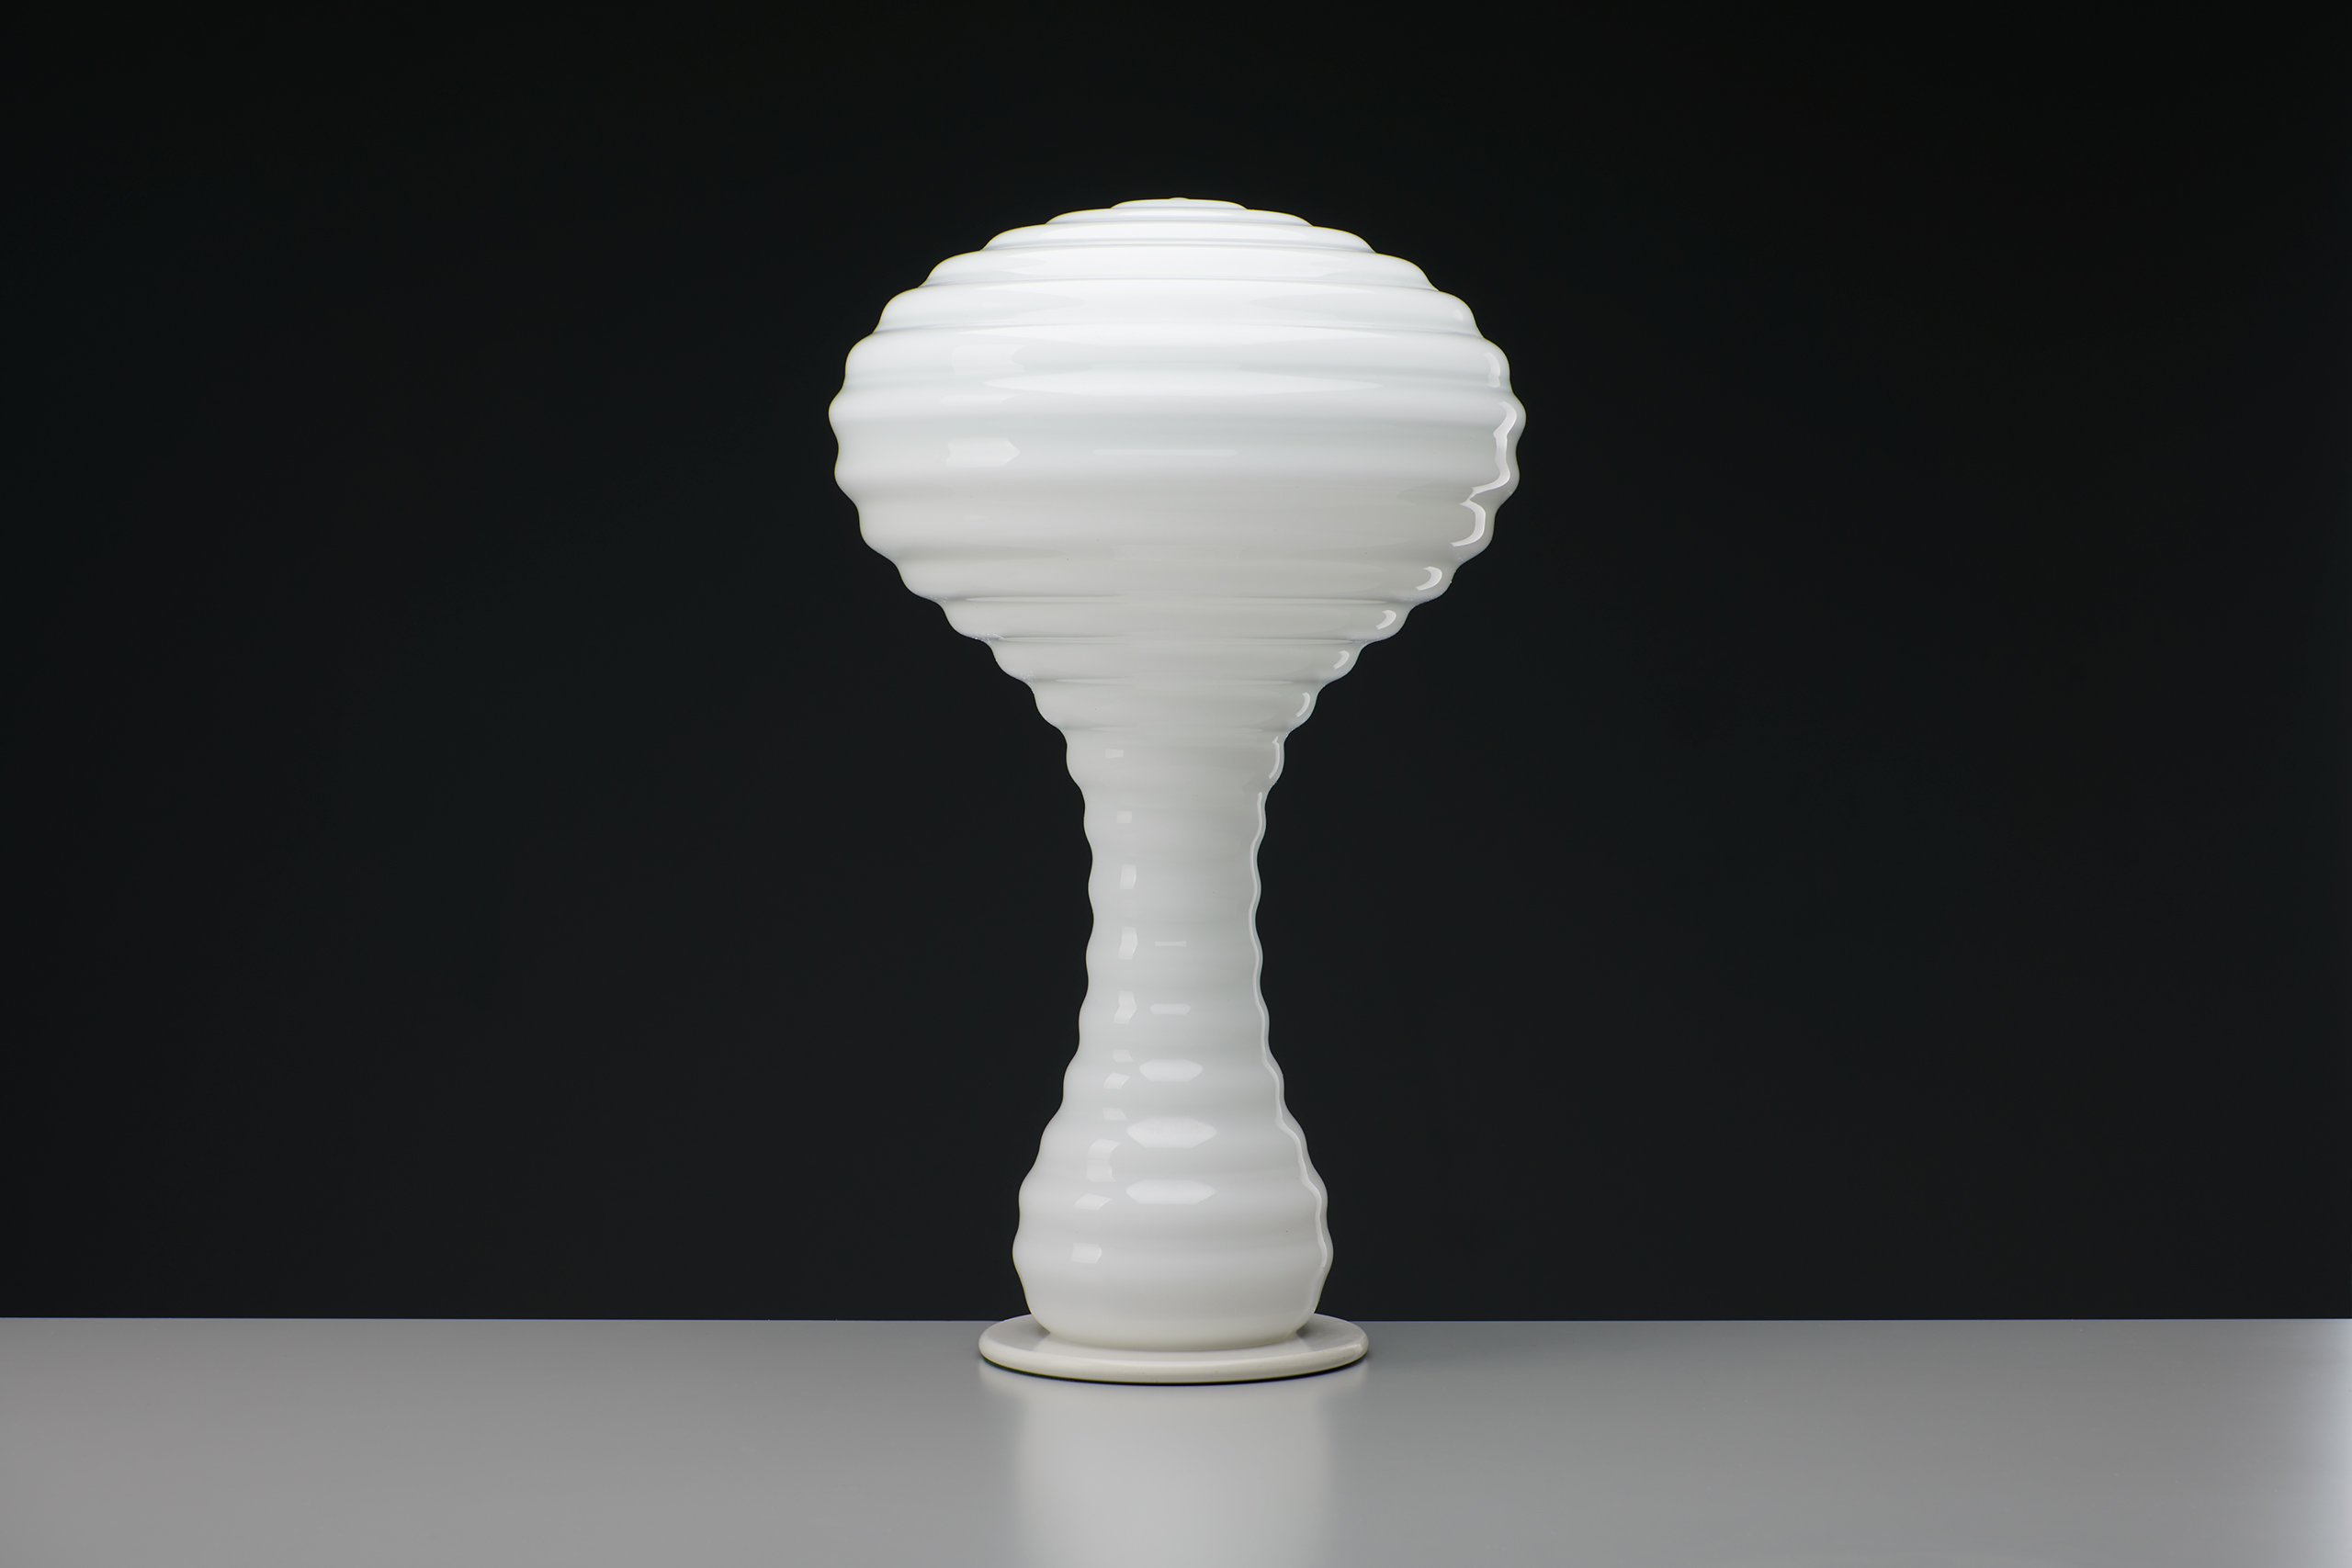 Verner Panton – “Mushroom” Table Lamp - Jackson Design